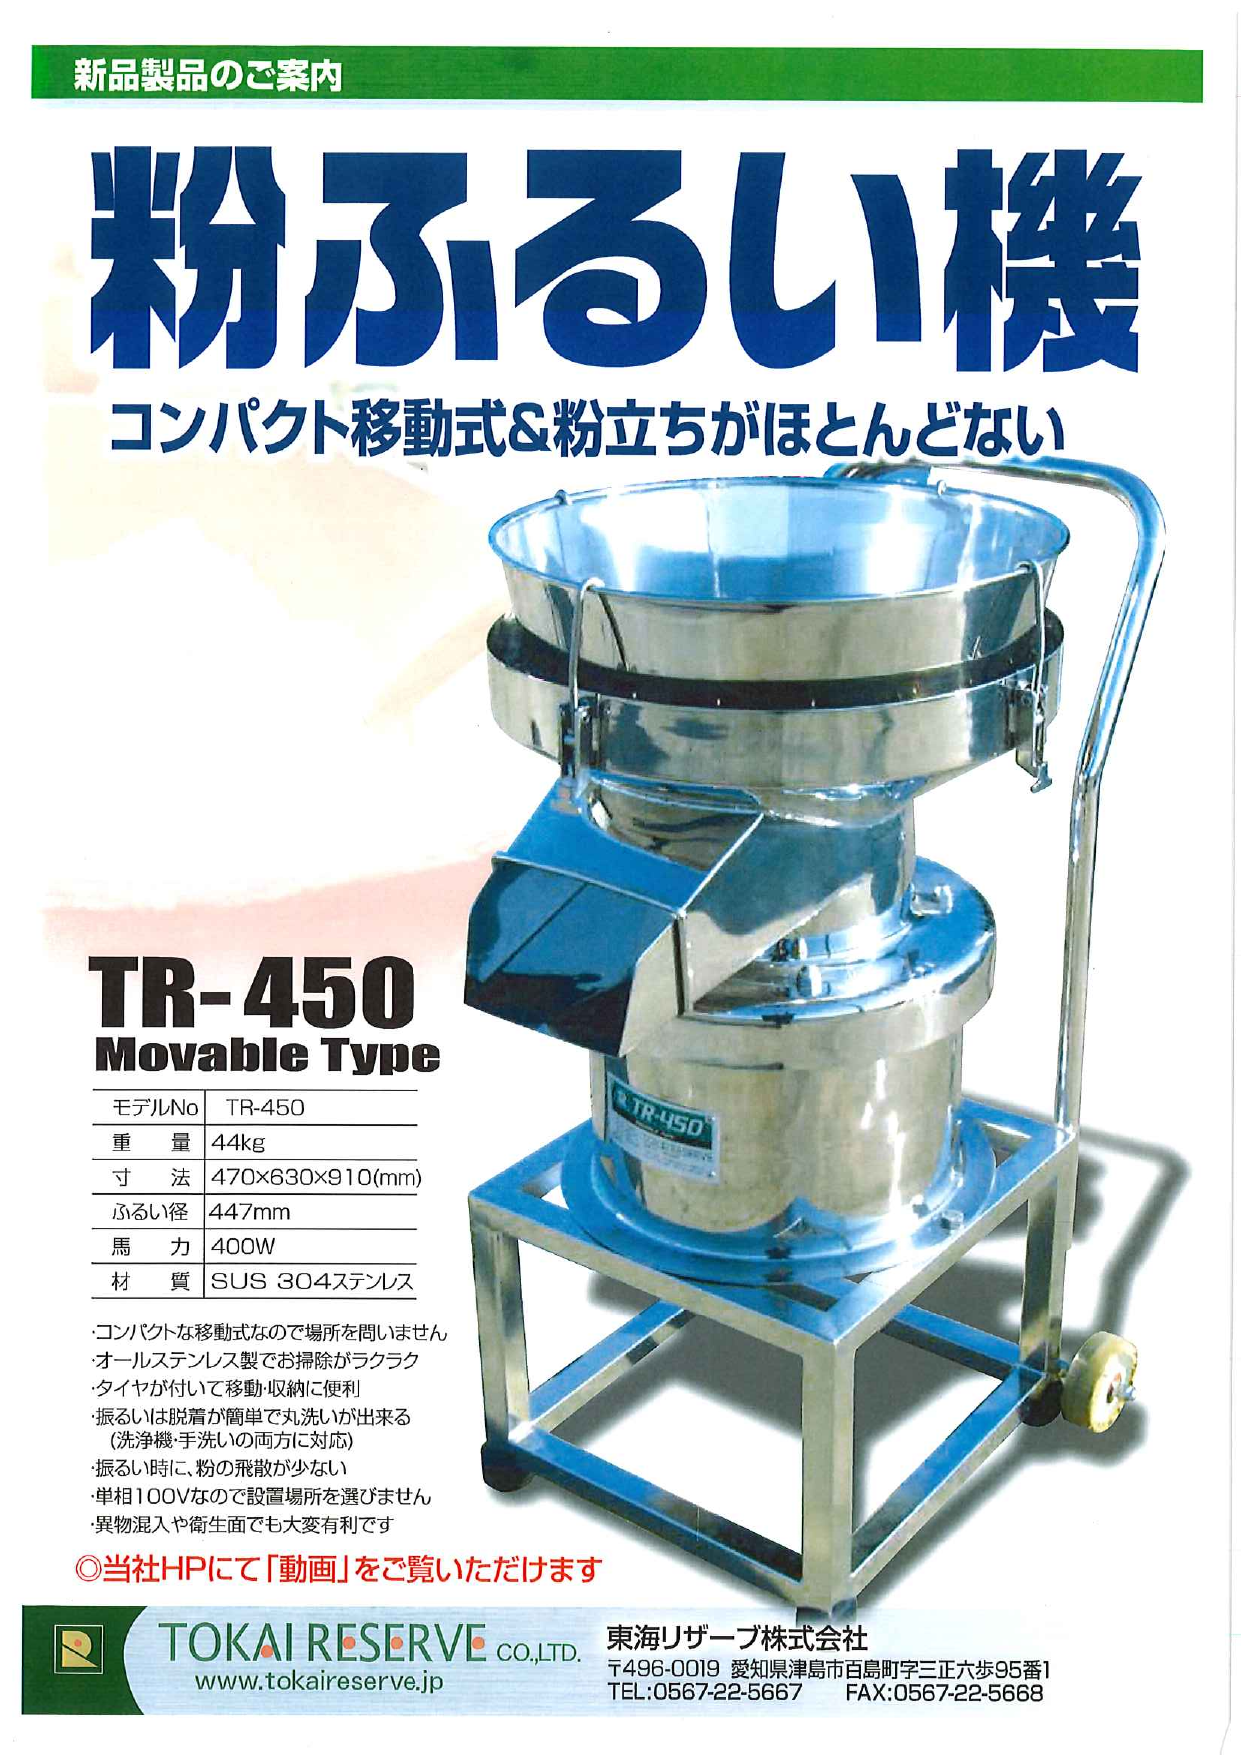 コンパクト移動式 粉ふるい機 TR-450 Movable Type（東海リザーブ株式